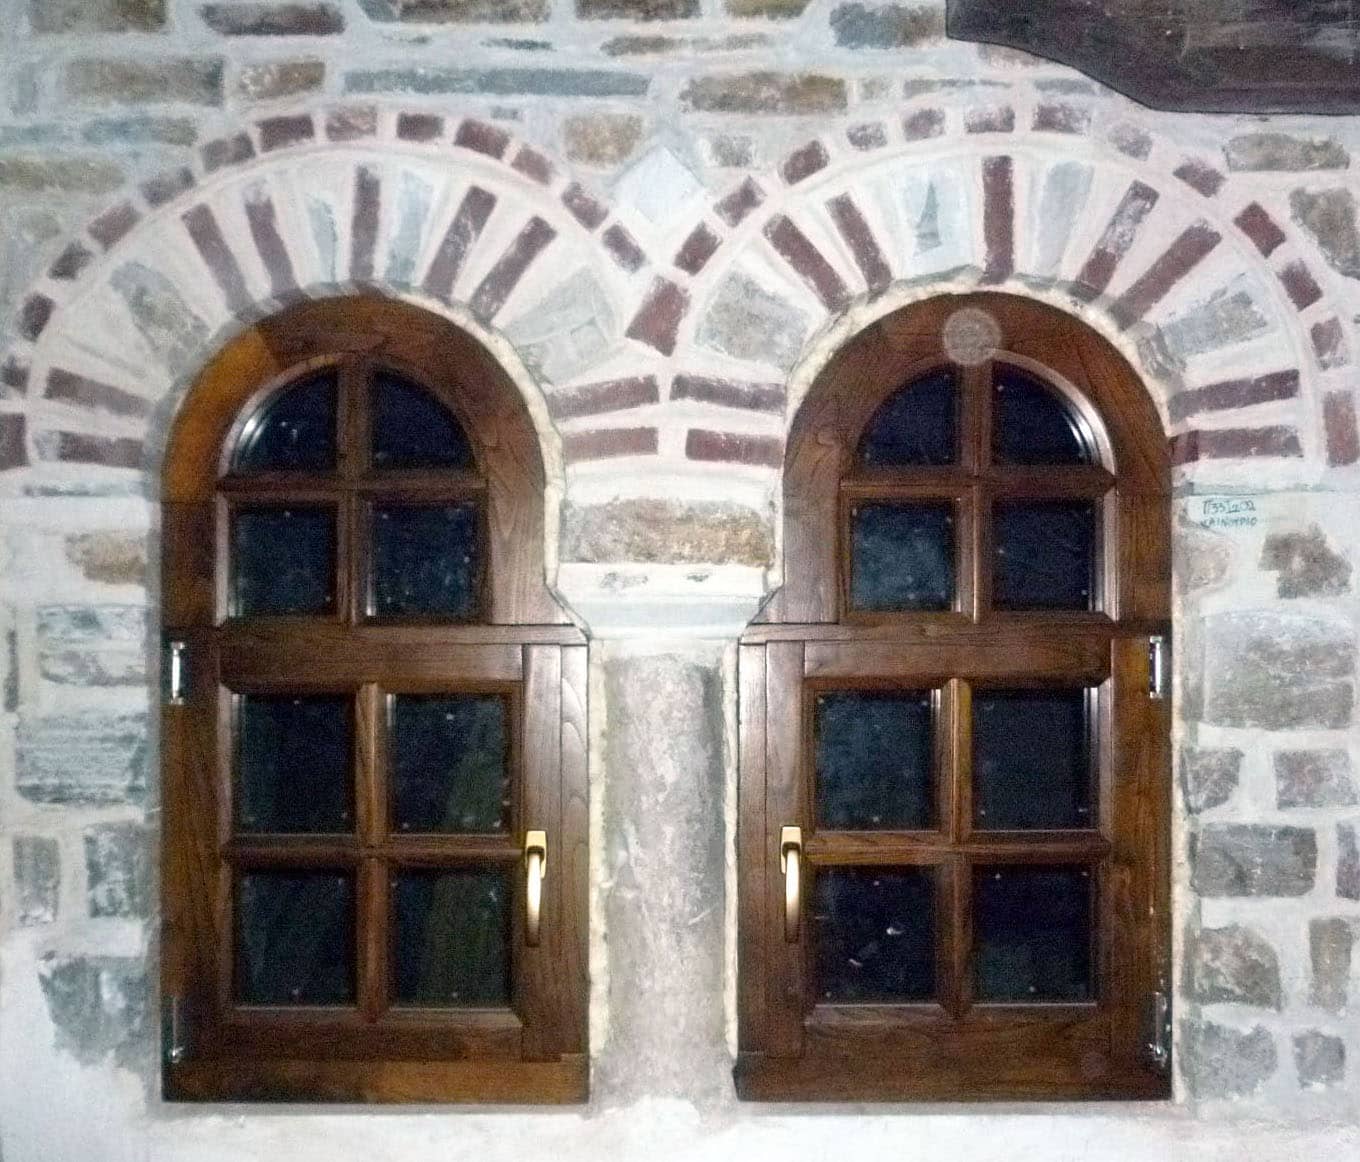 ξύλινα παράθυρα ειδικής κατασκευής με ακανόνιστη κάσα